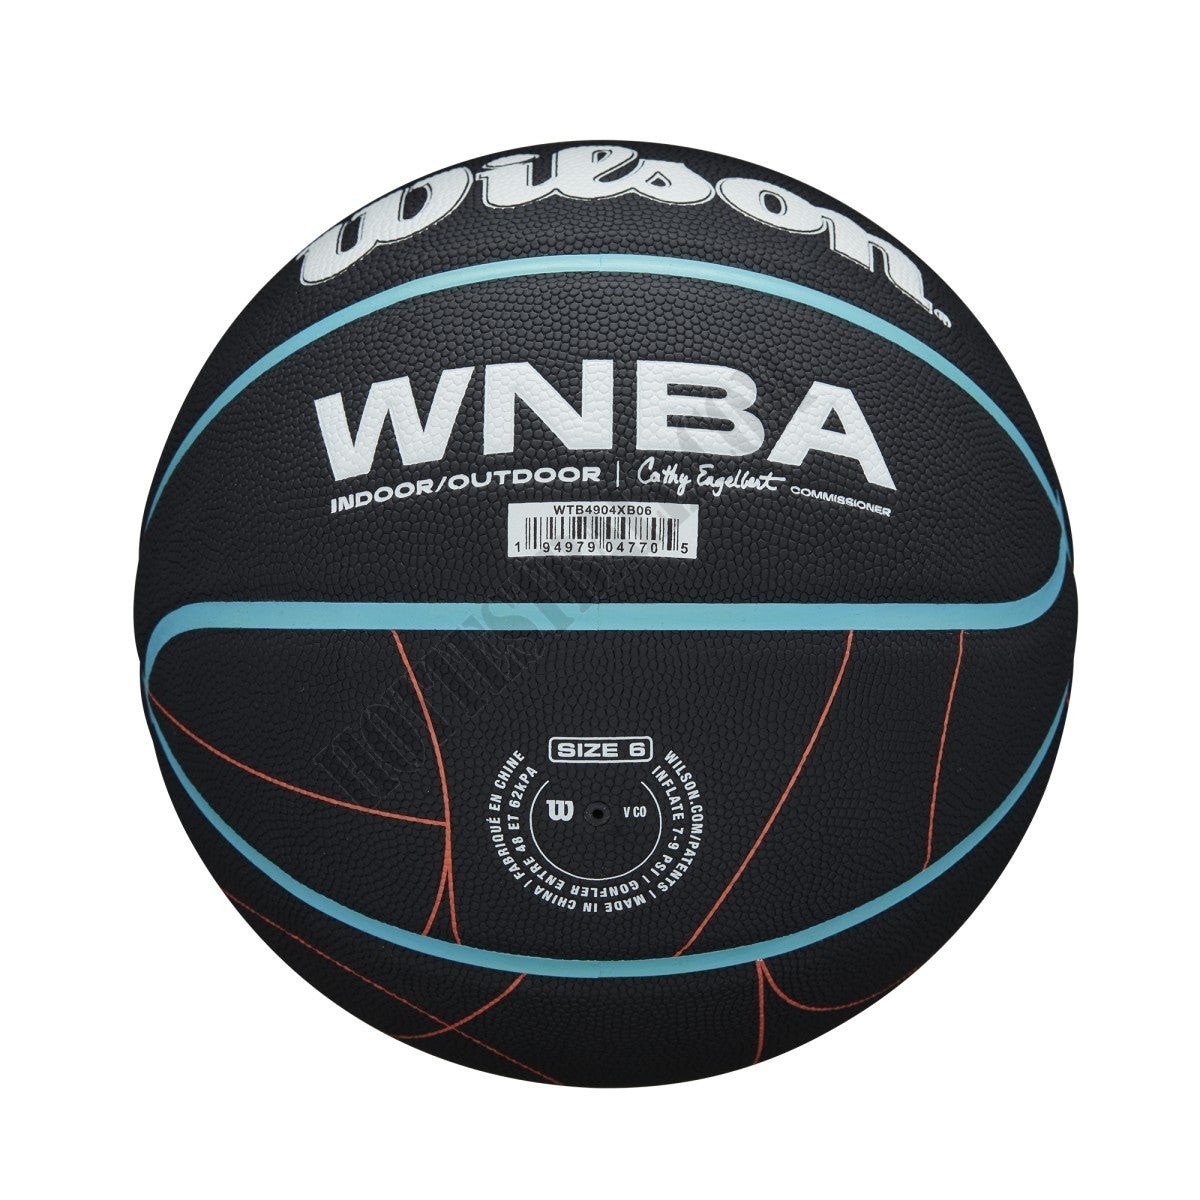 WNBA Heir Court Indoor/Outdoor Basketball - Wilson Discount Store - -6